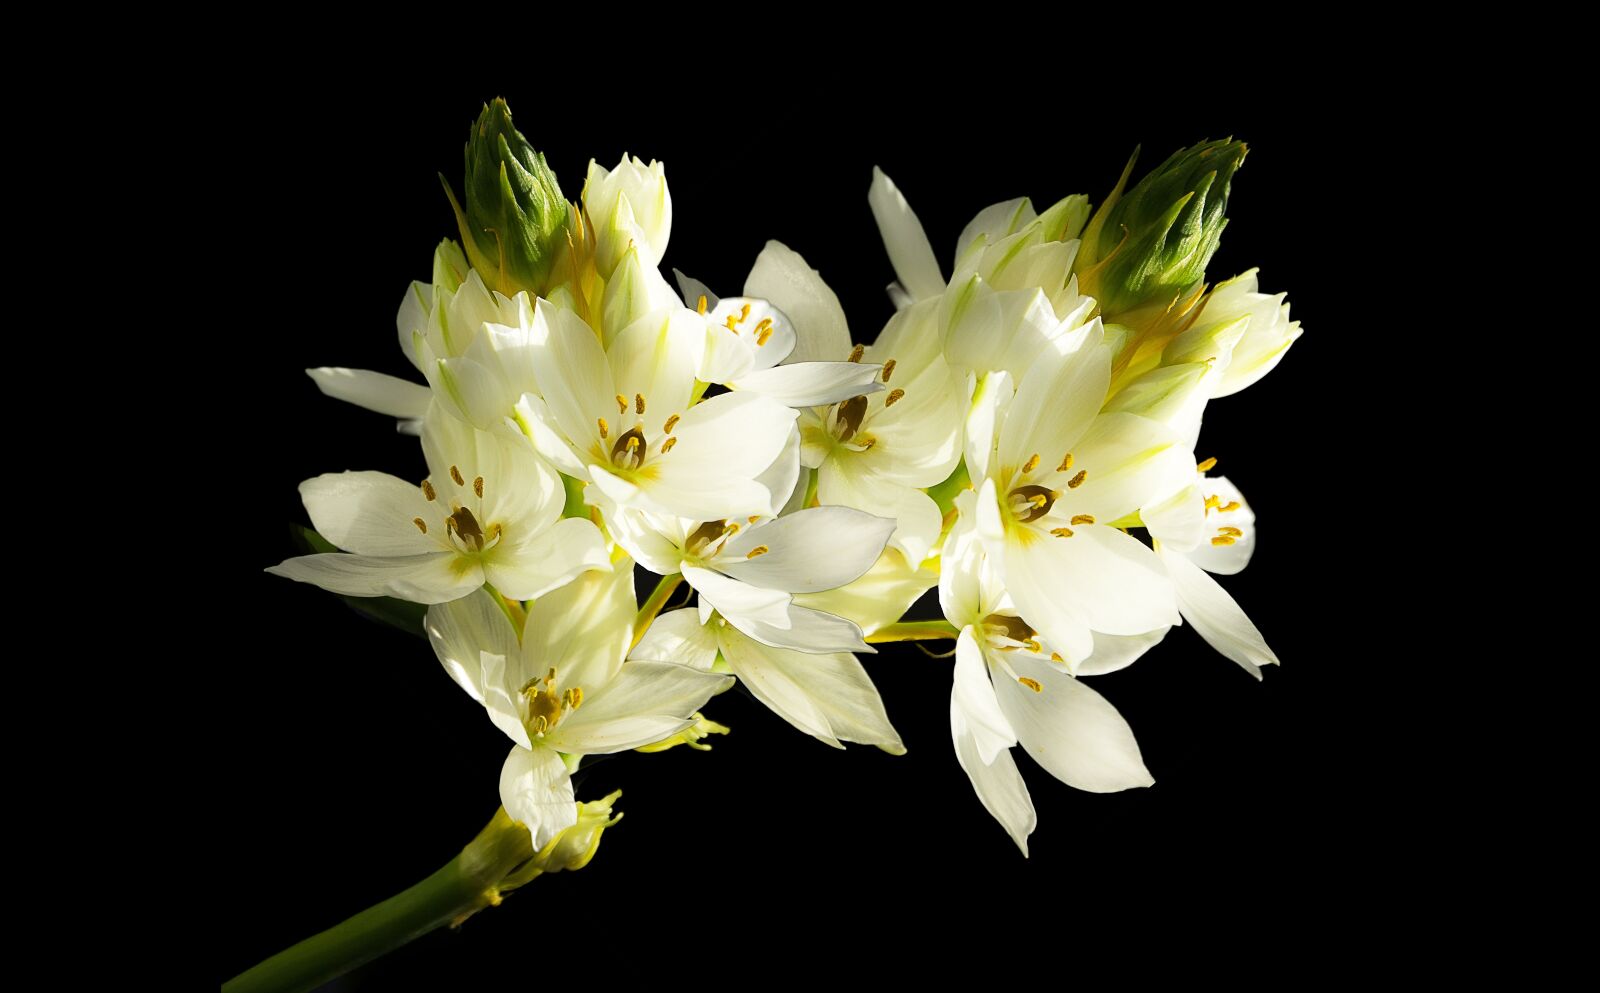 Canon EOS 550D (EOS Rebel T2i / EOS Kiss X4) sample photo. White flower, spring, white photography